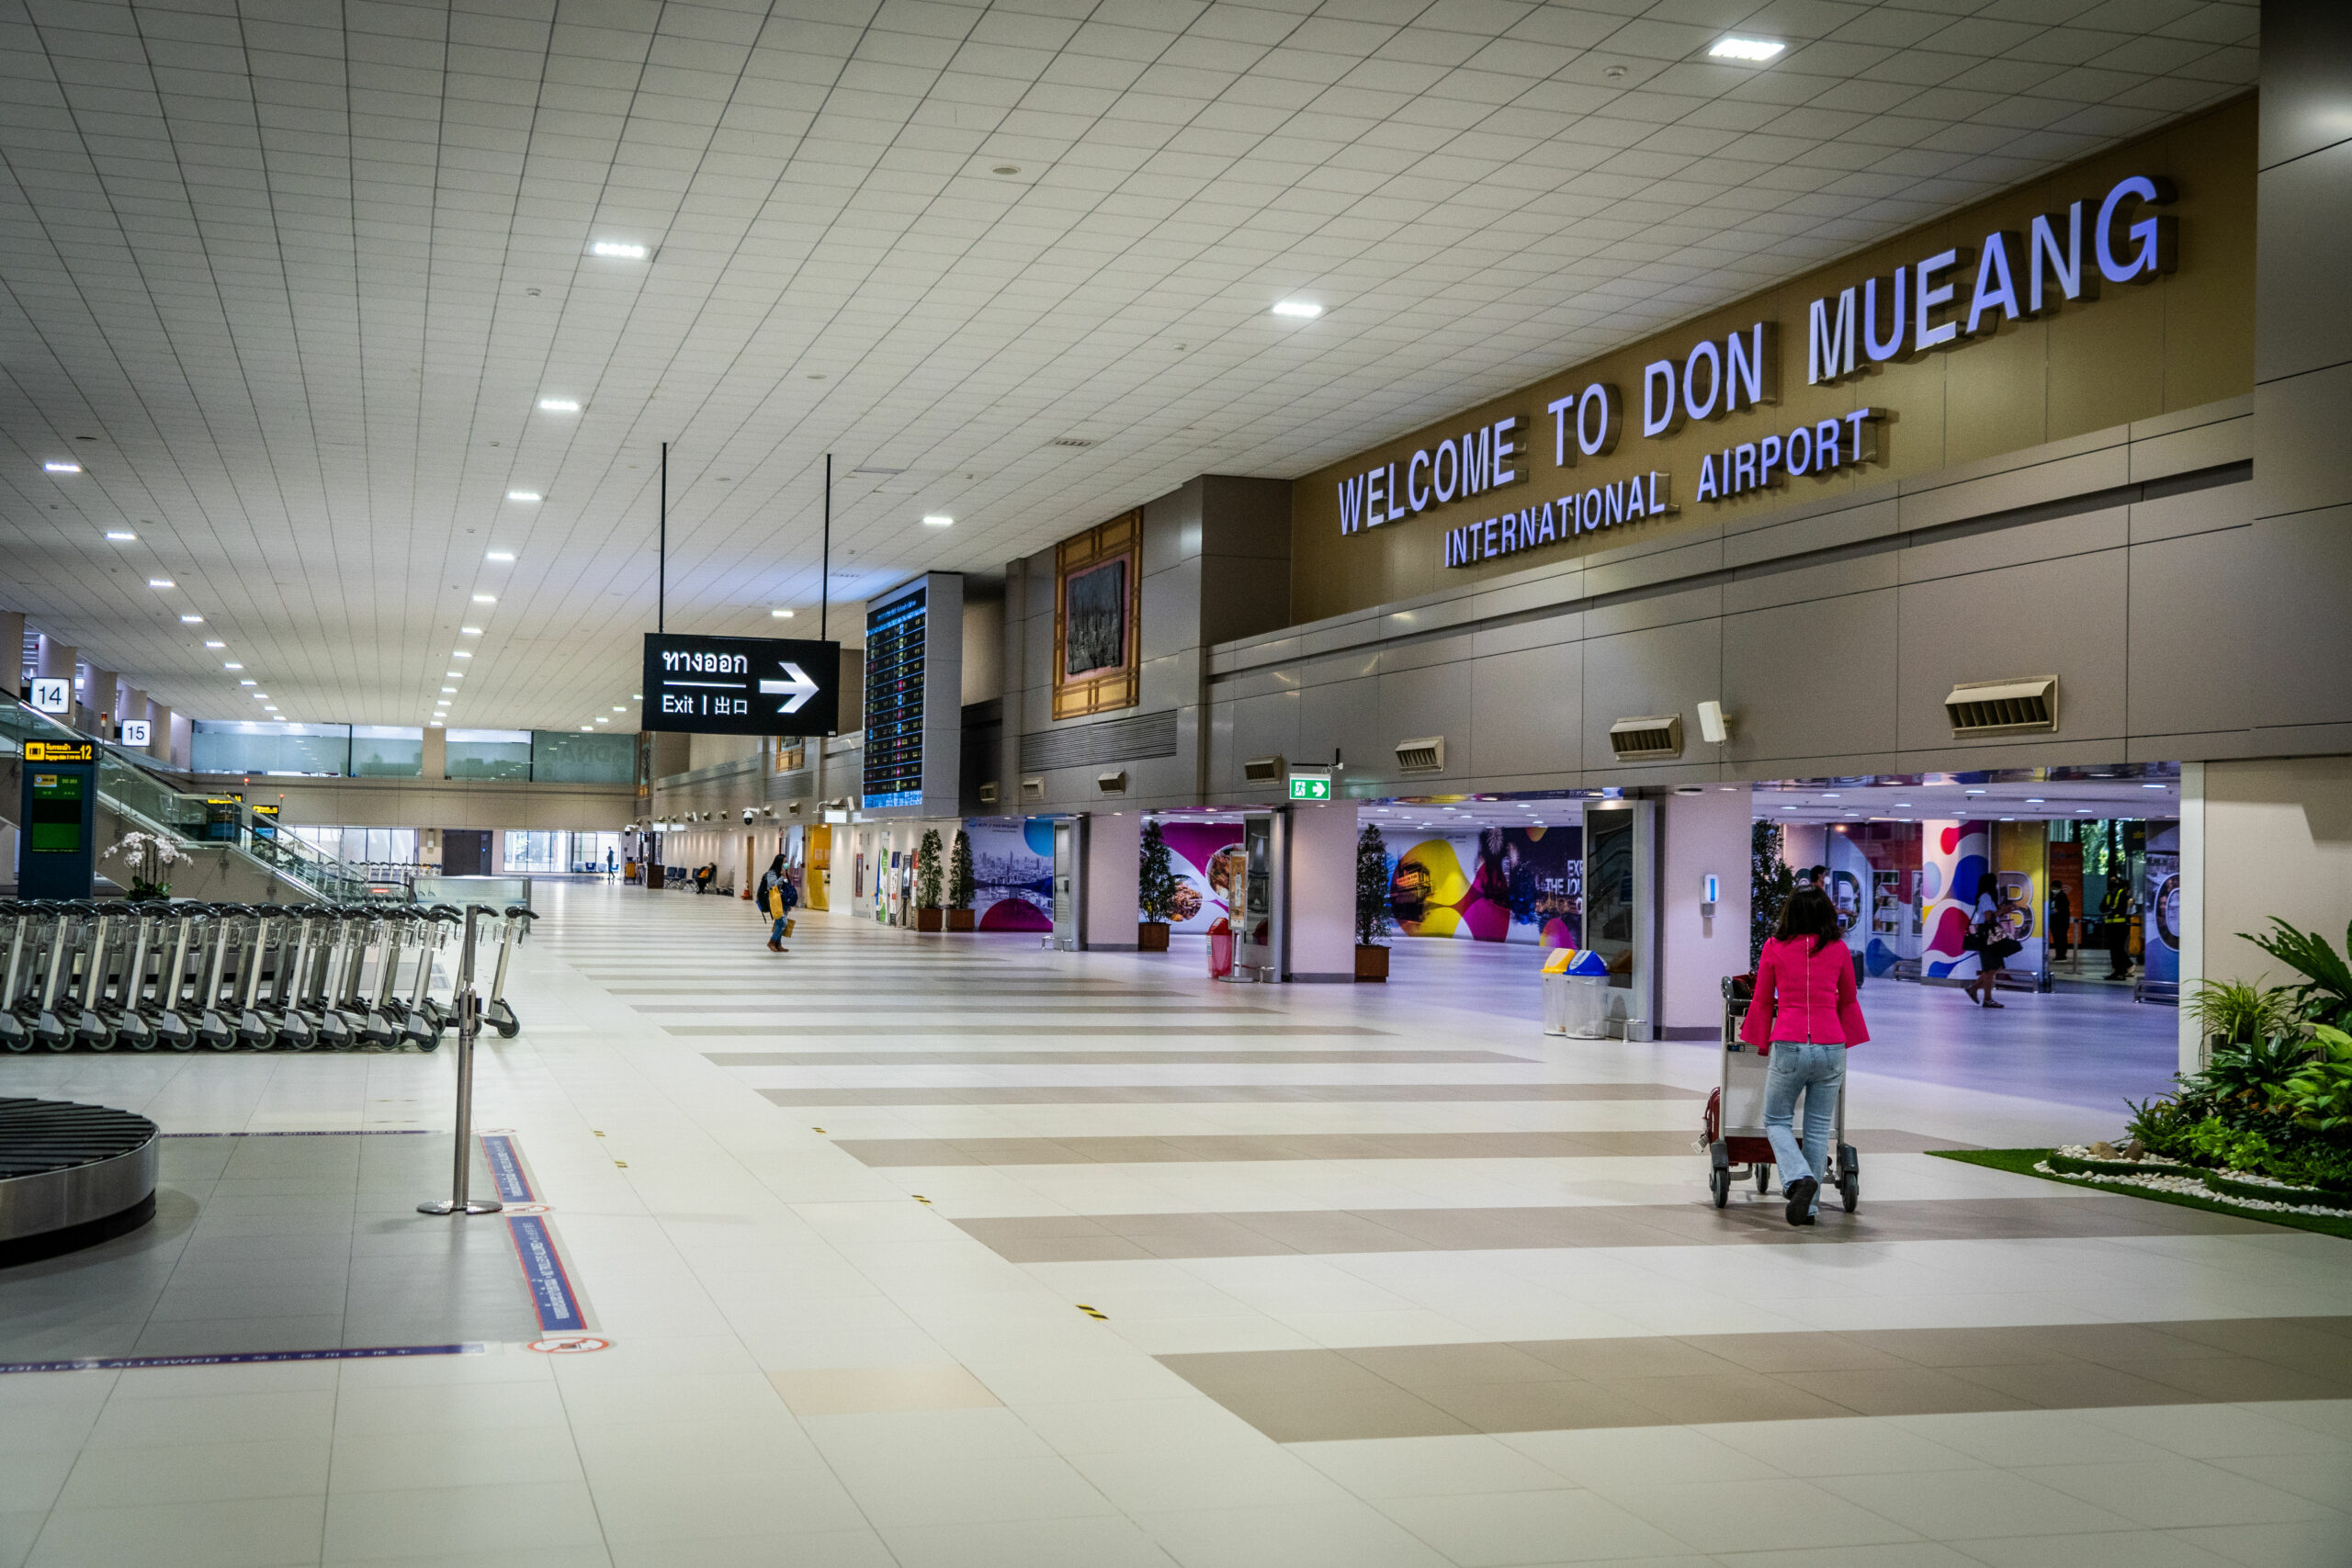 Personen sind in einer Halle des internationalen Flughafens Don Mueang zu sehen.